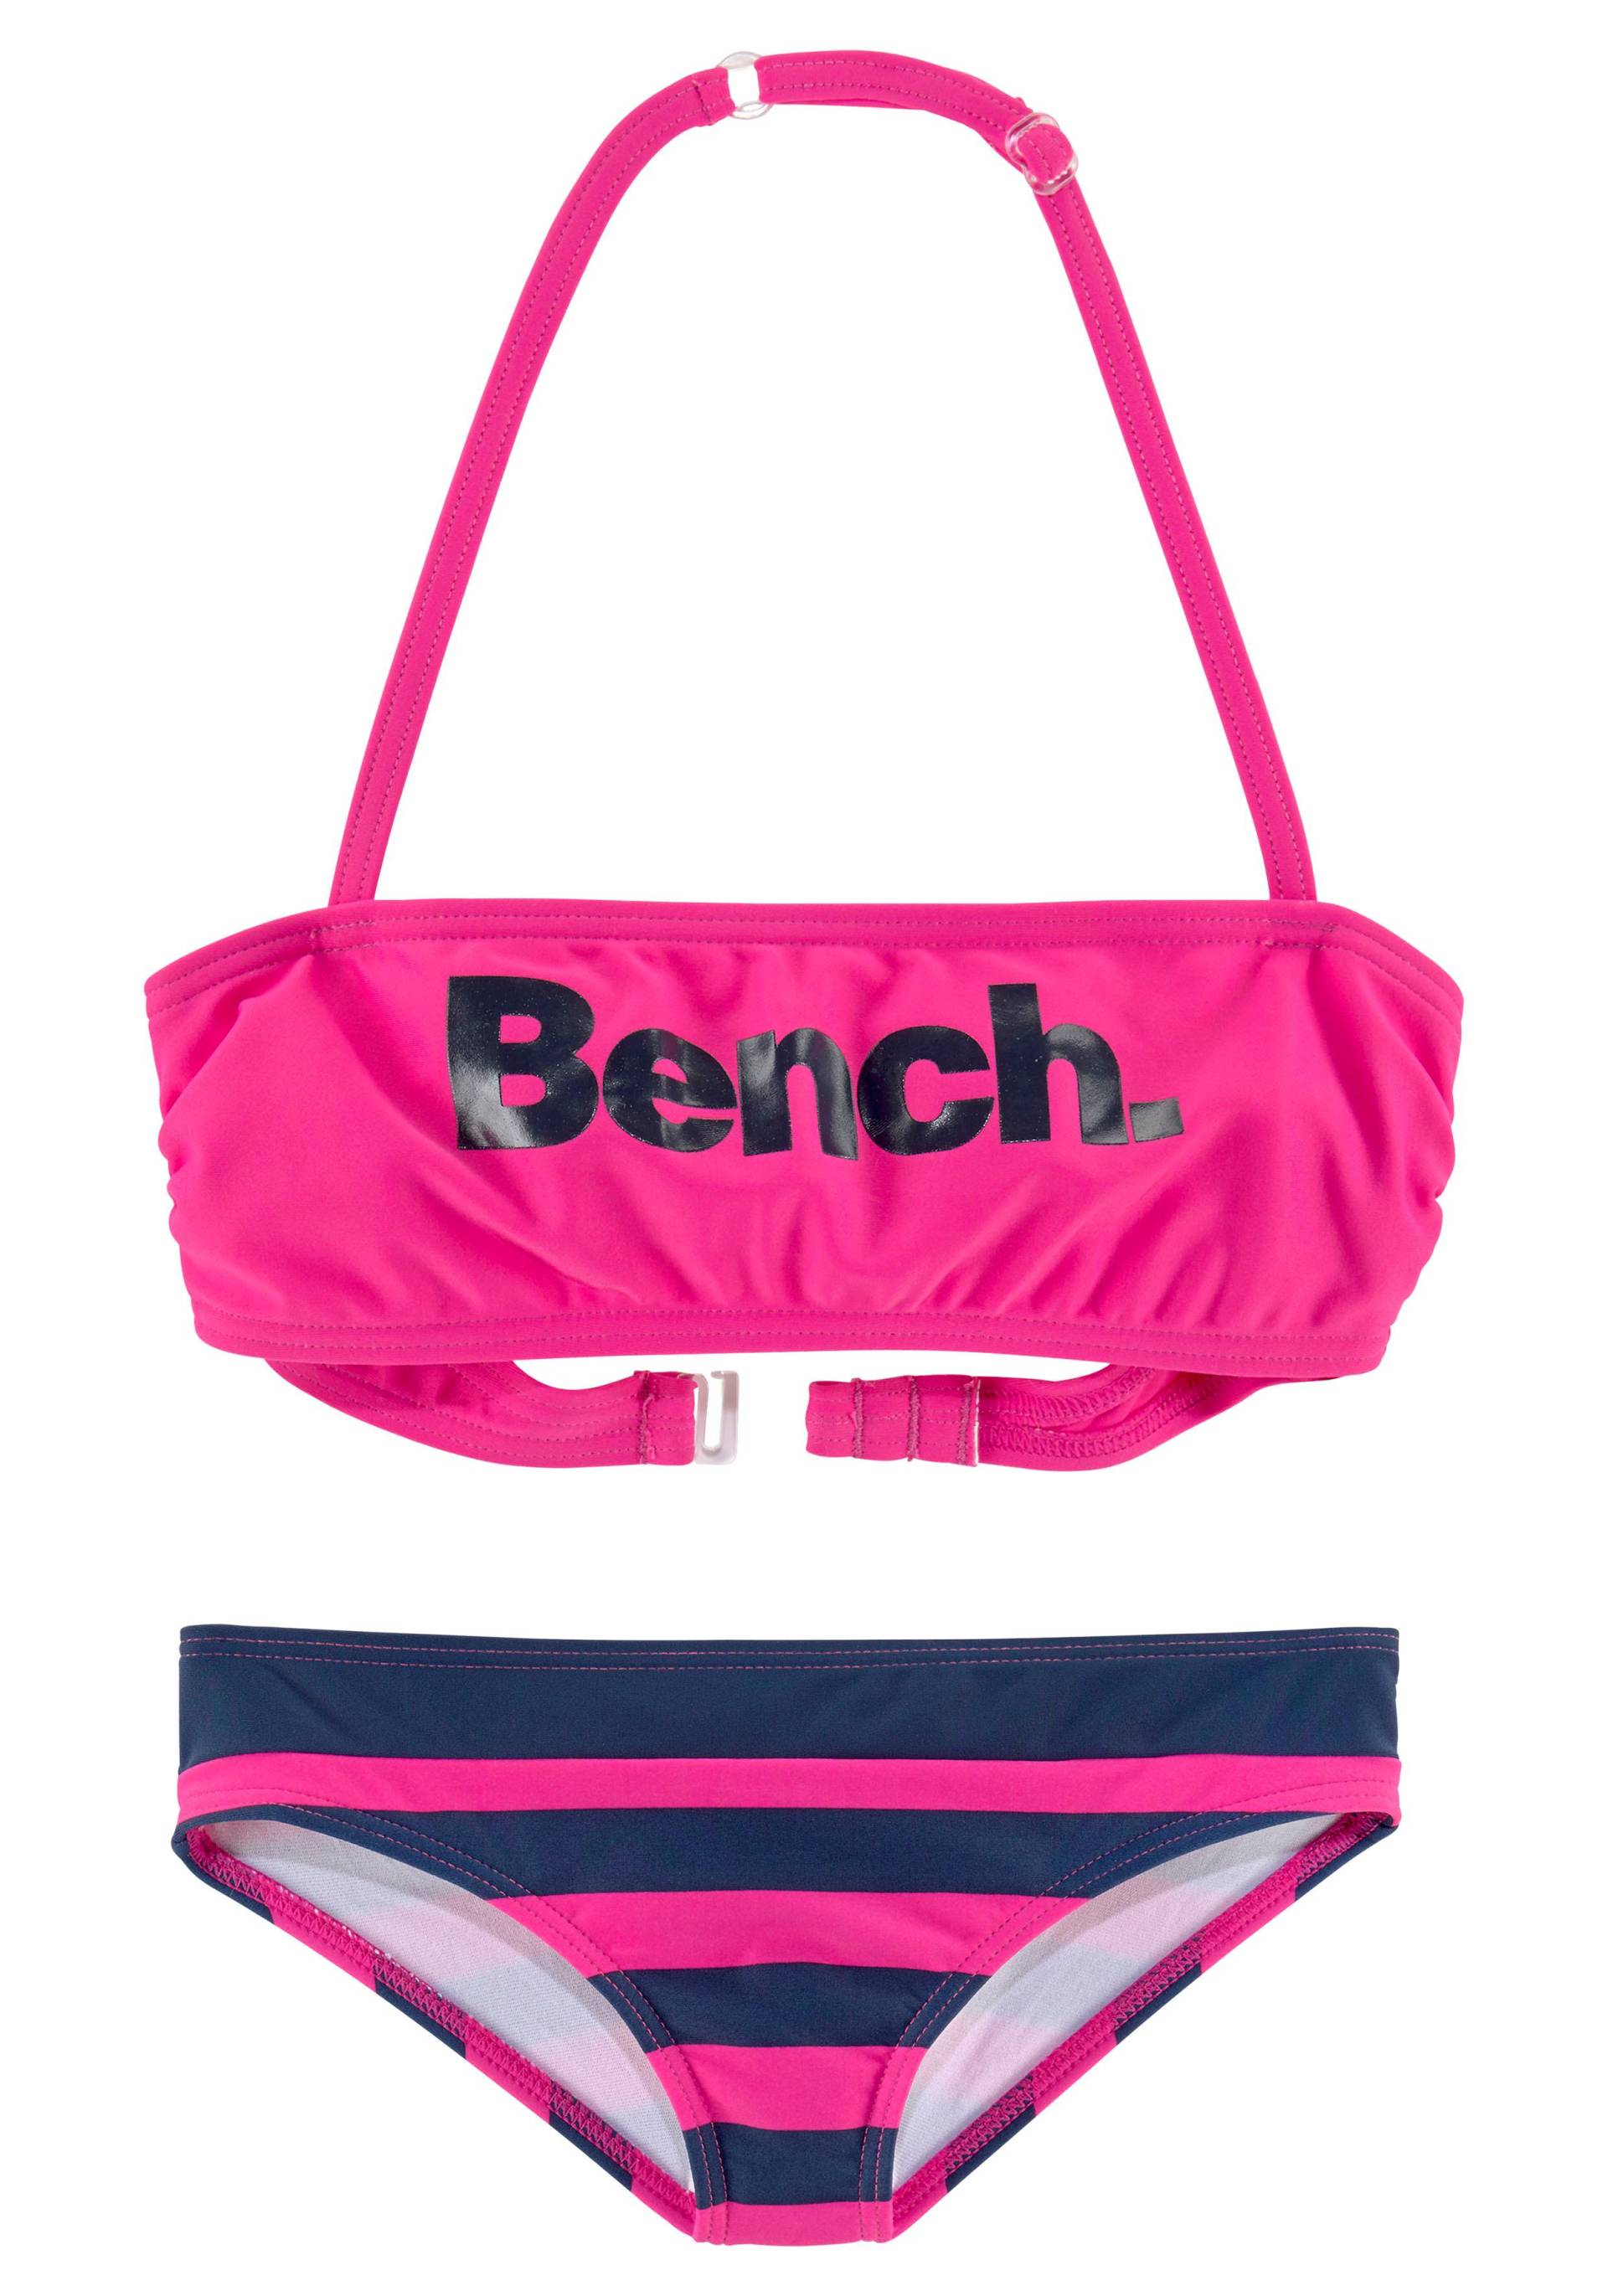 Bench. Bandeau-Bikini, mit grossem Logoprint von Bench.